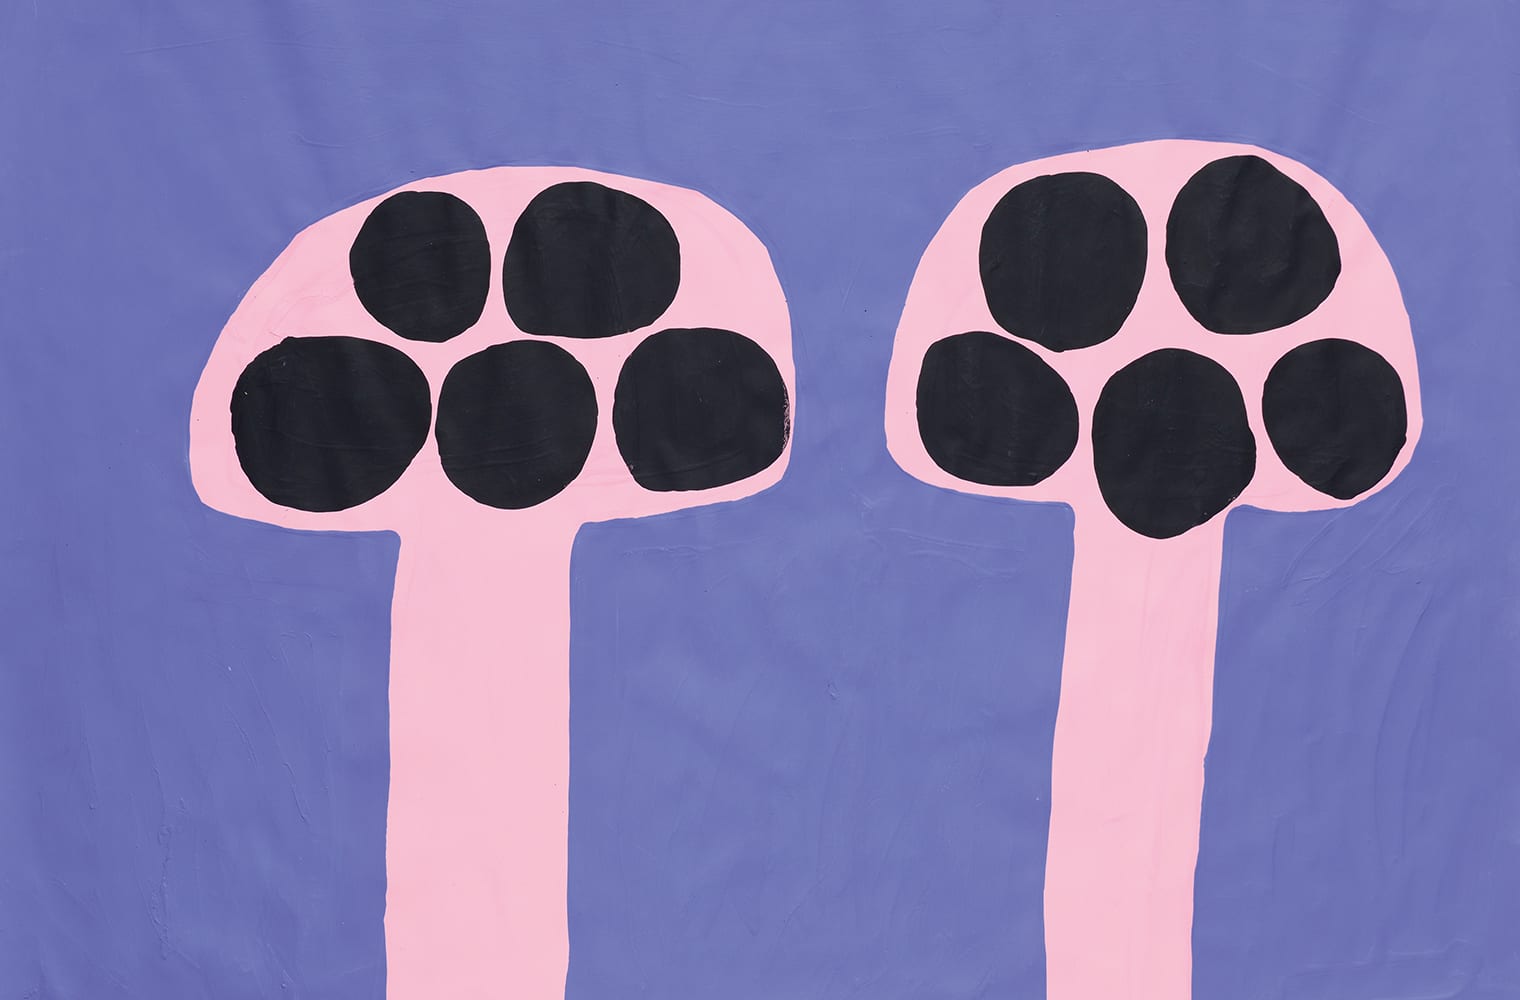 Mehrfärbige Darstellung von zwei Pilzen mit großen schwarzen Punkten am Schirm. Harald Schulth